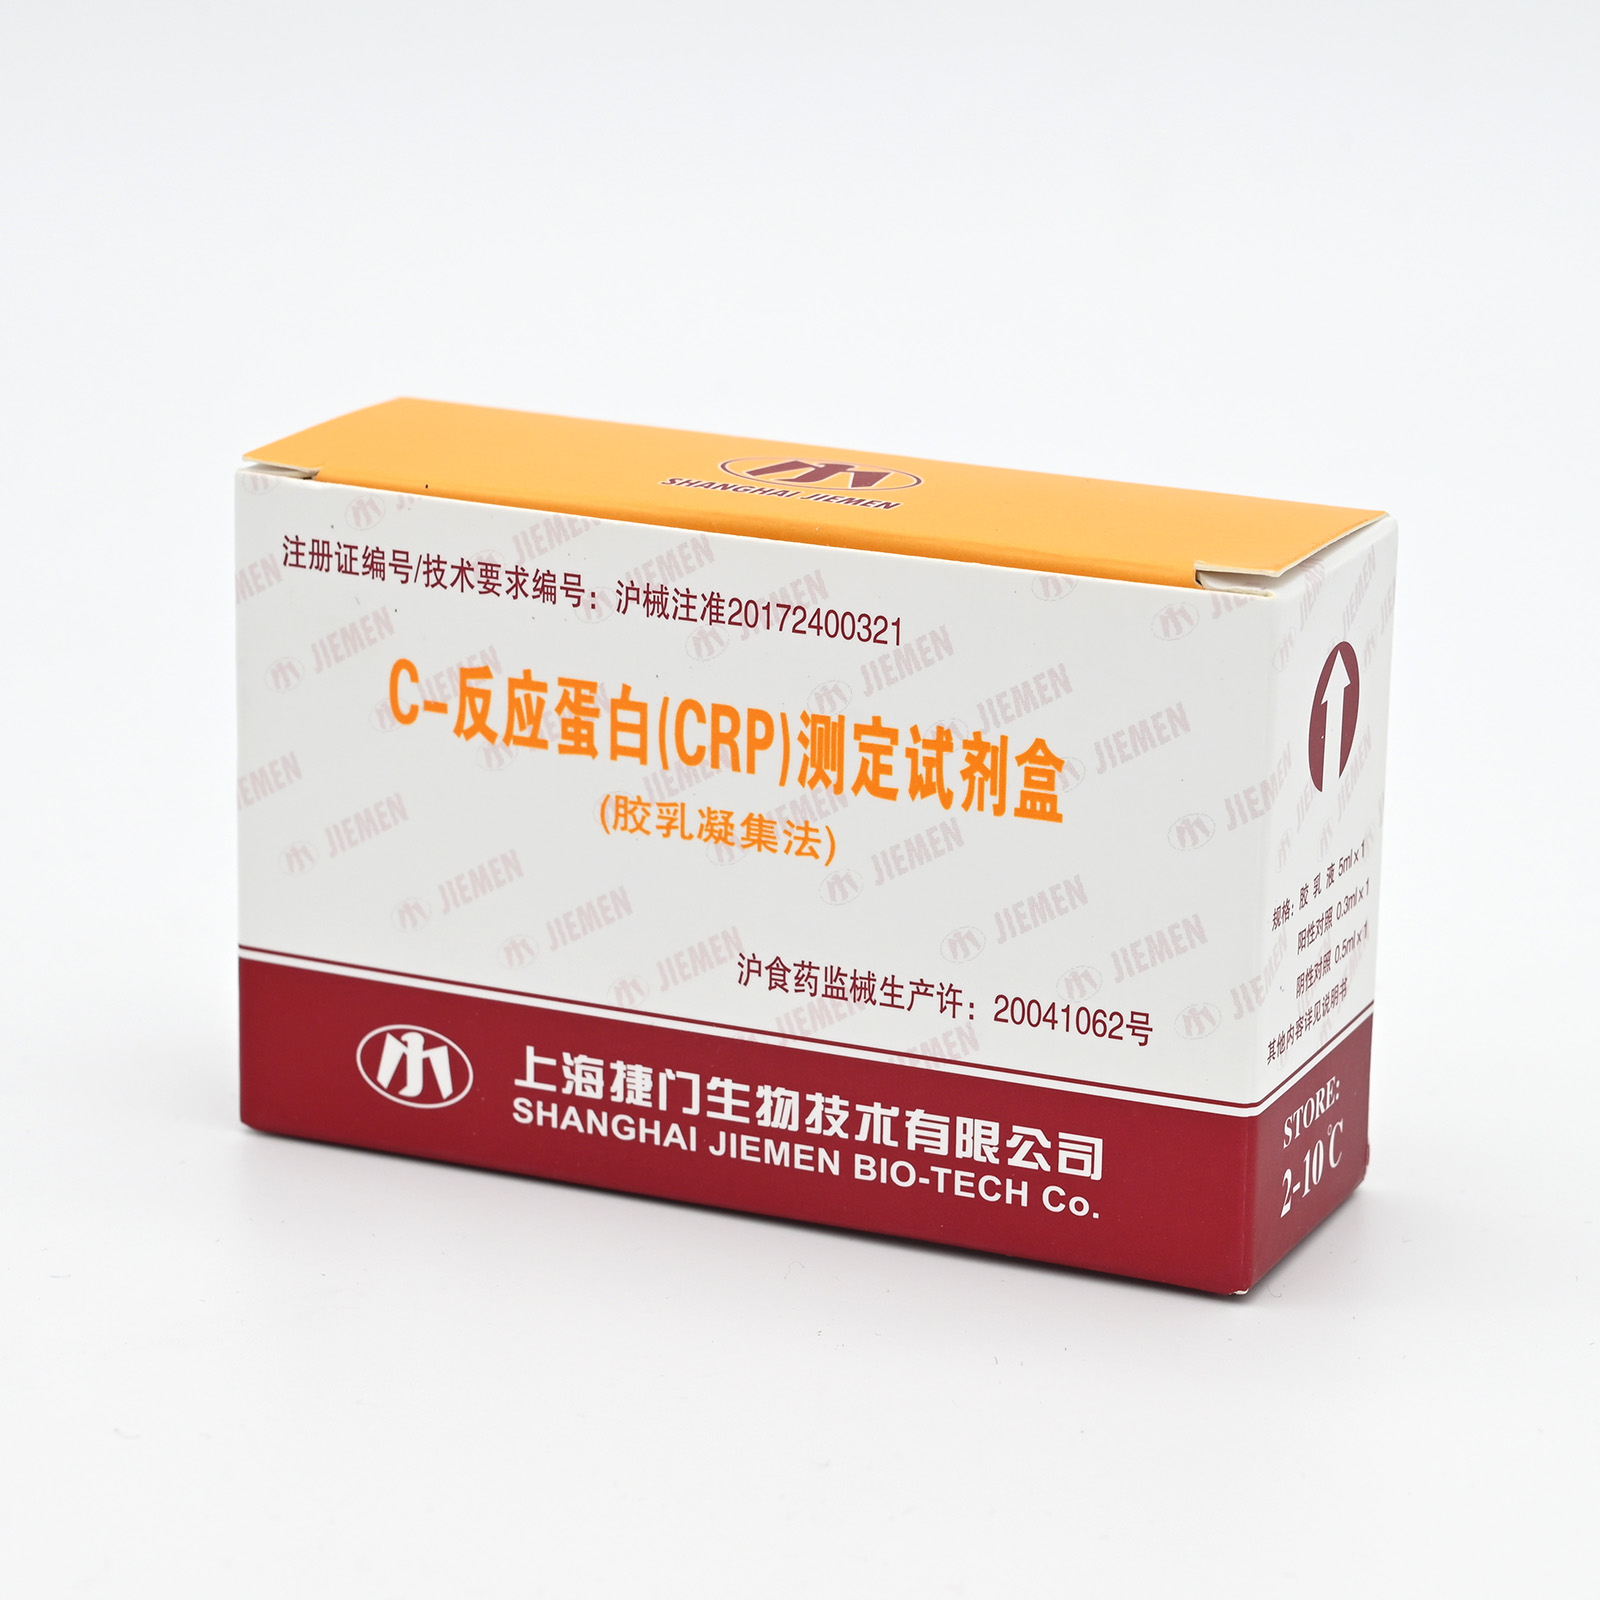 【捷门】C-反应蛋白(CRP)测定试剂盒(胶乳凝集法)-云医购